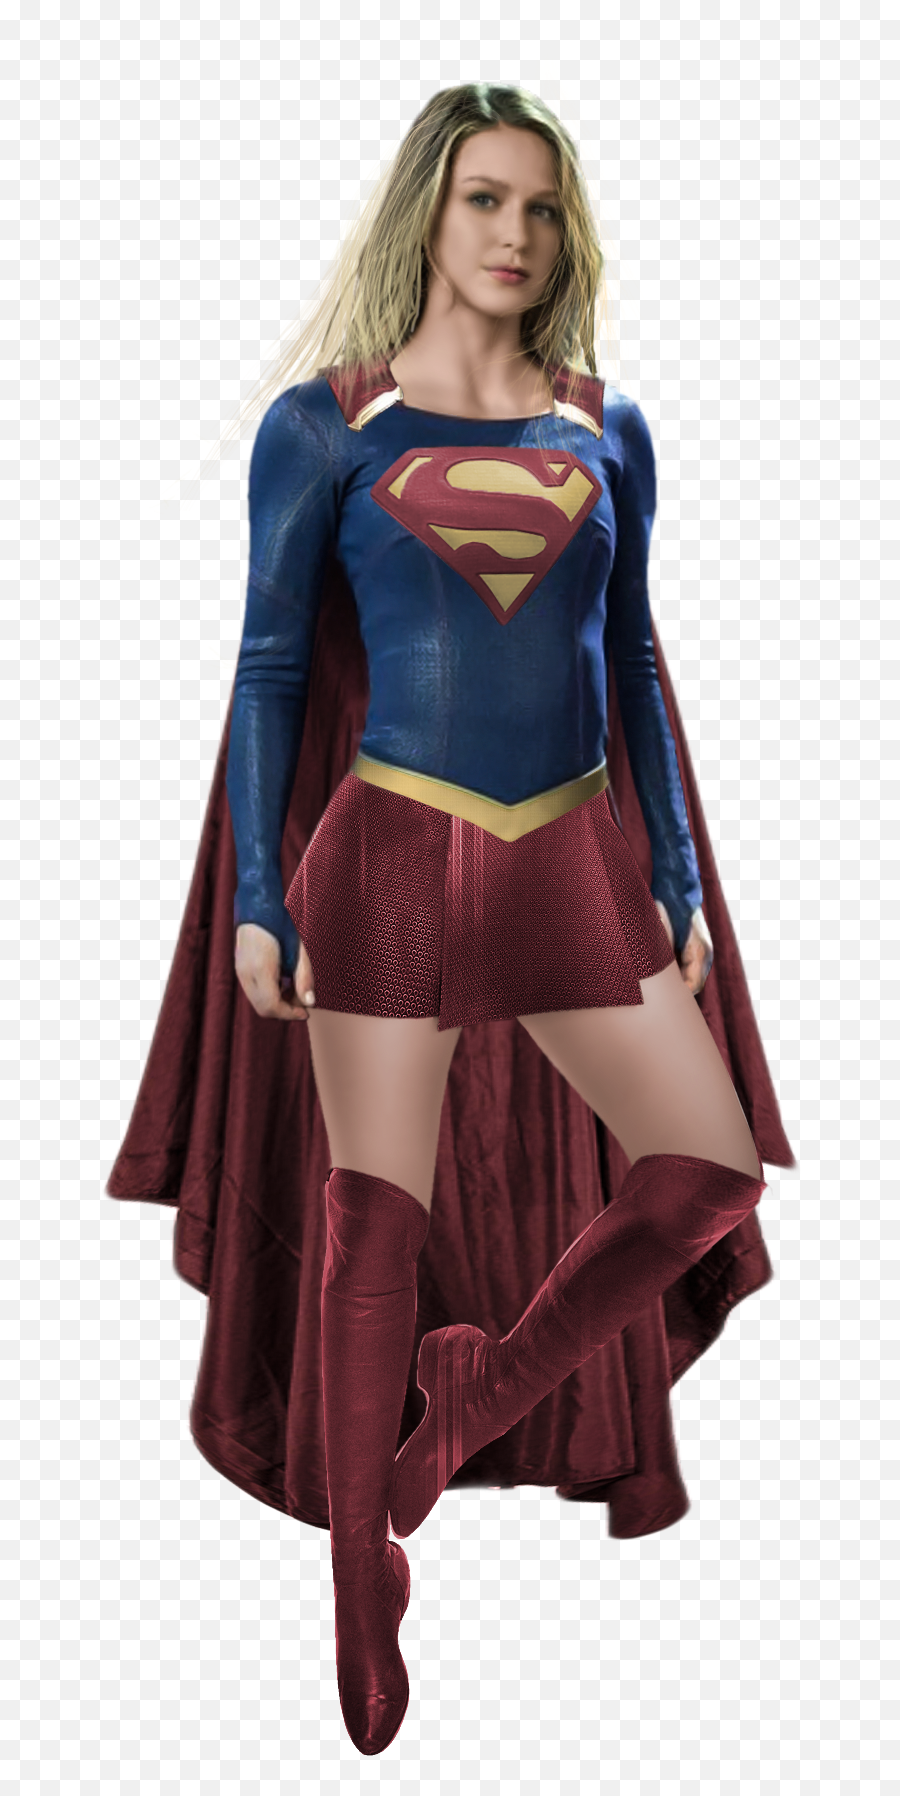 Supergirl Png Images Transparent Background Png Play - Supergirl Png Emoji,Supergirl Logo